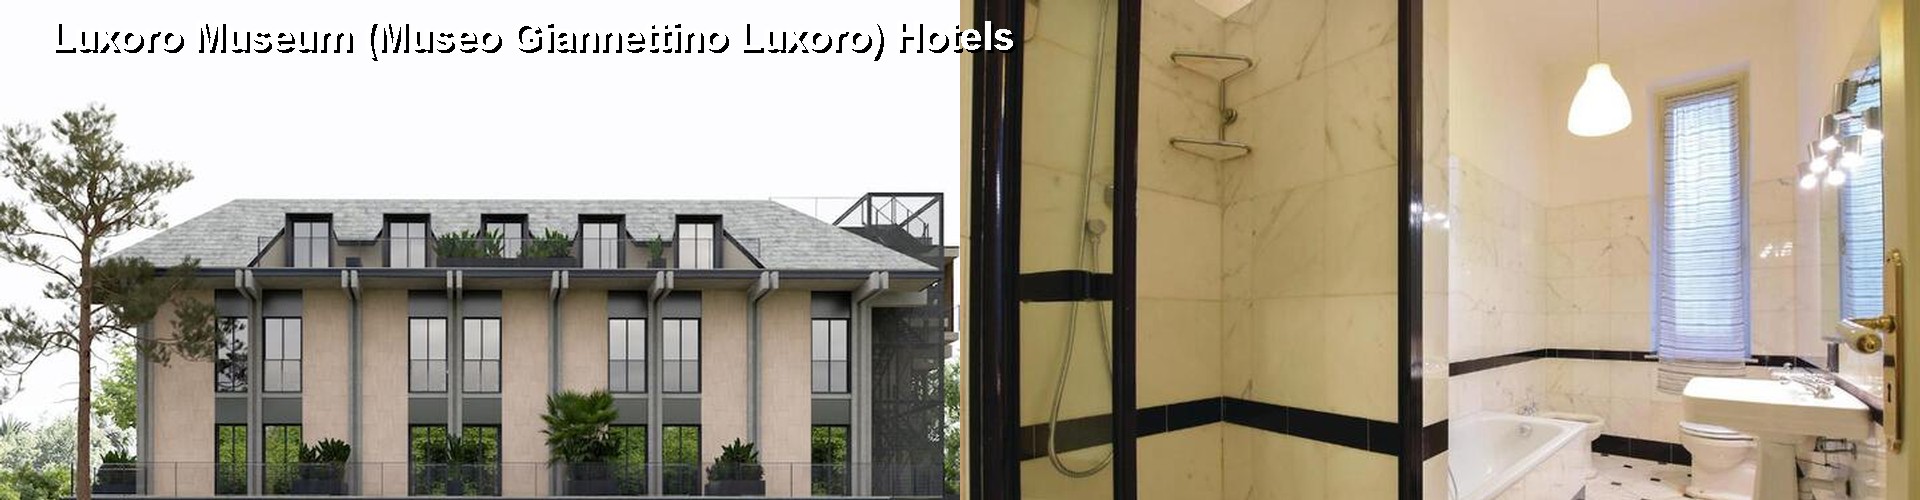 5 Best Hotels near Luxoro Museum (Museo Giannettino Luxoro)